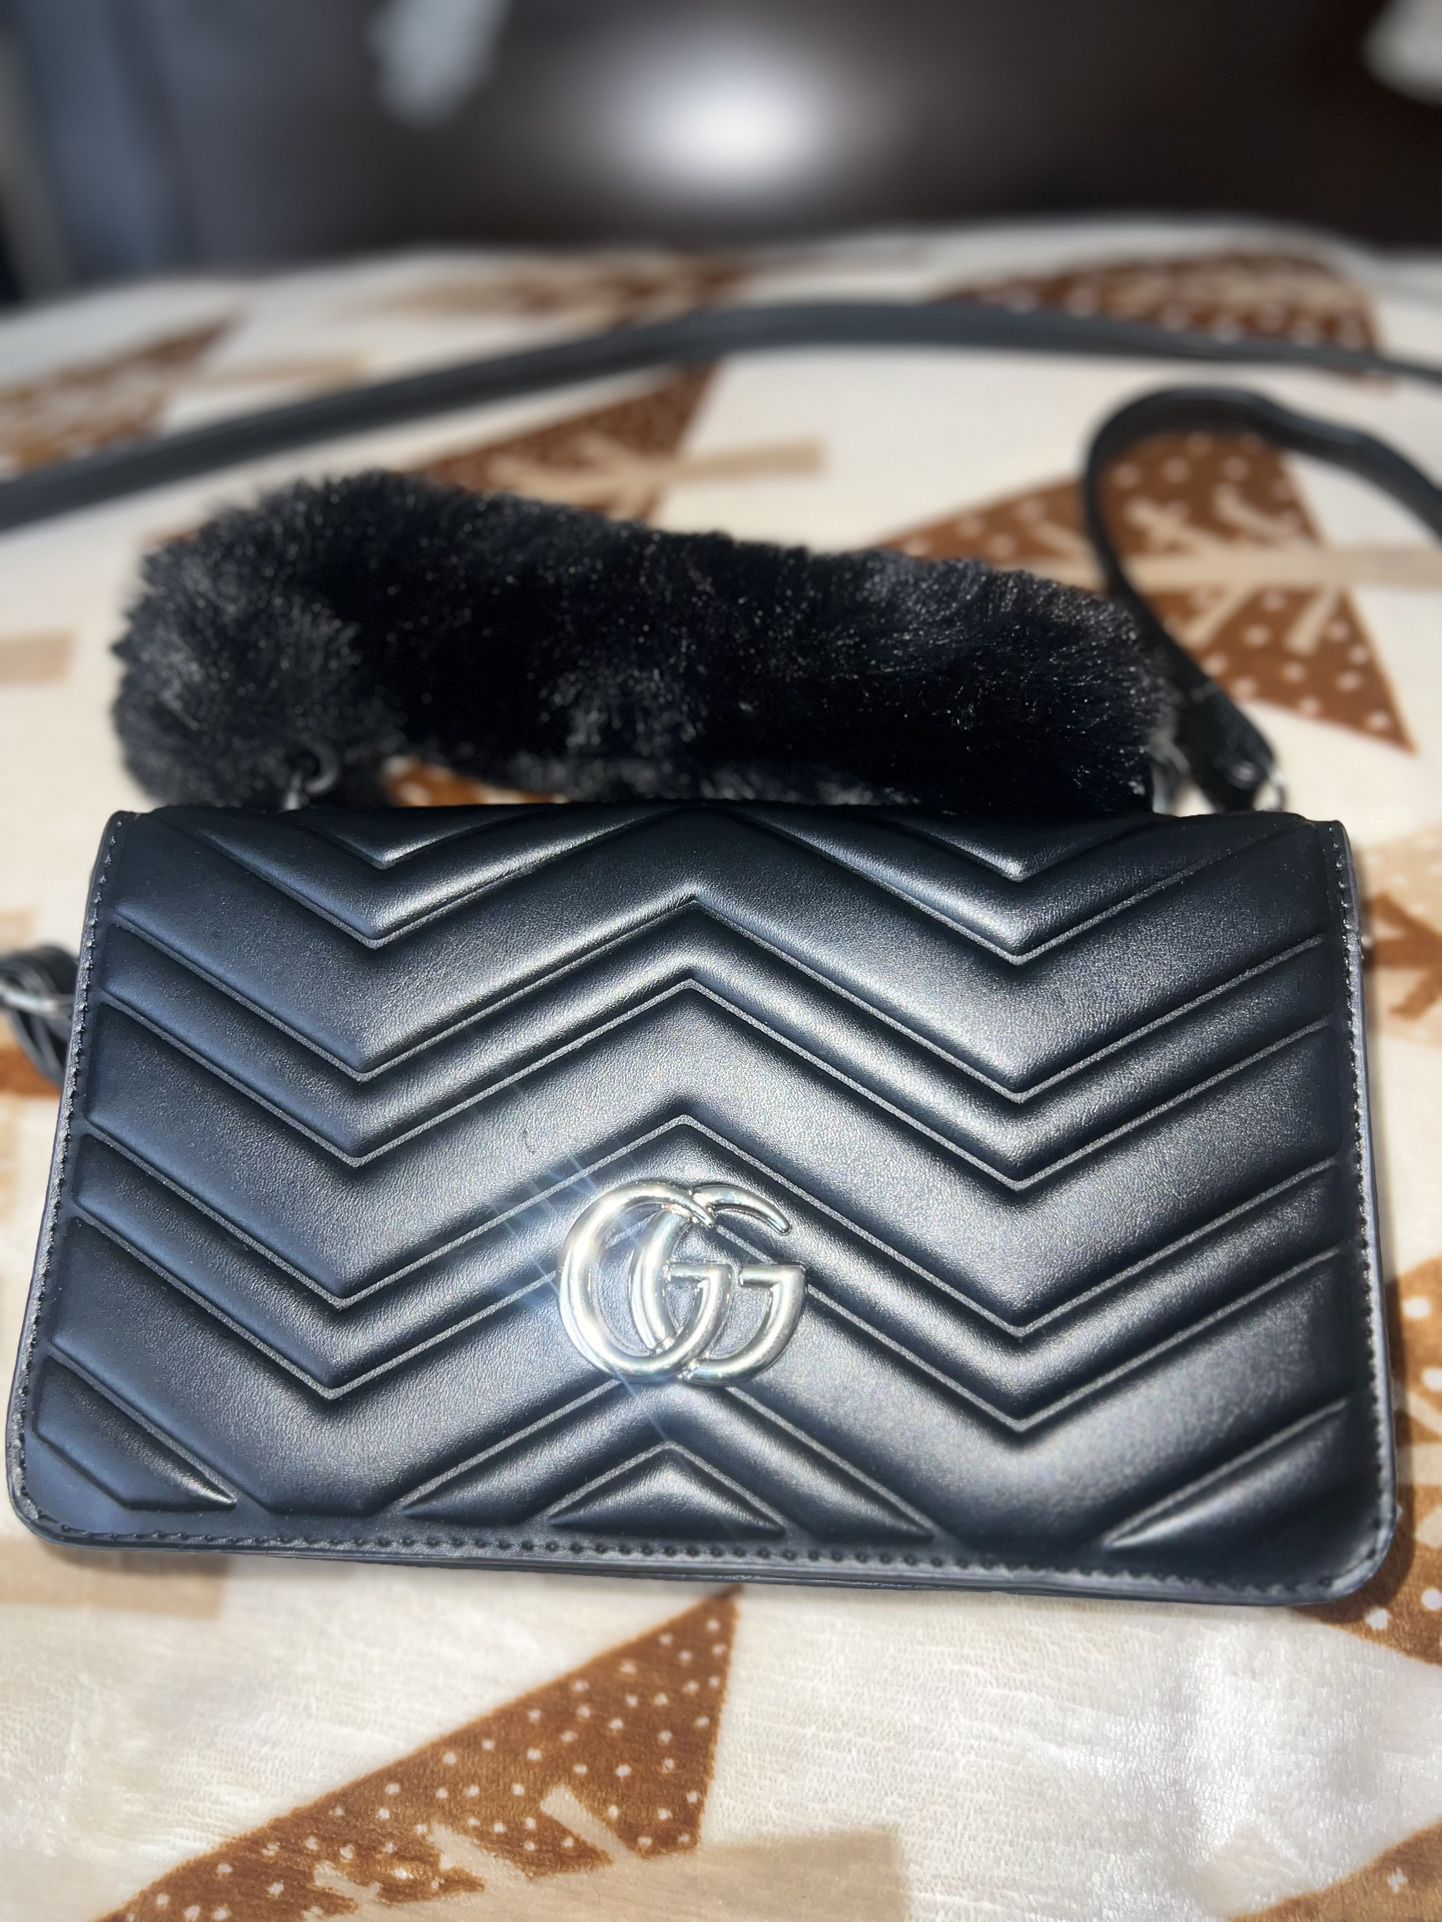 Gucci handbag (Authentic)